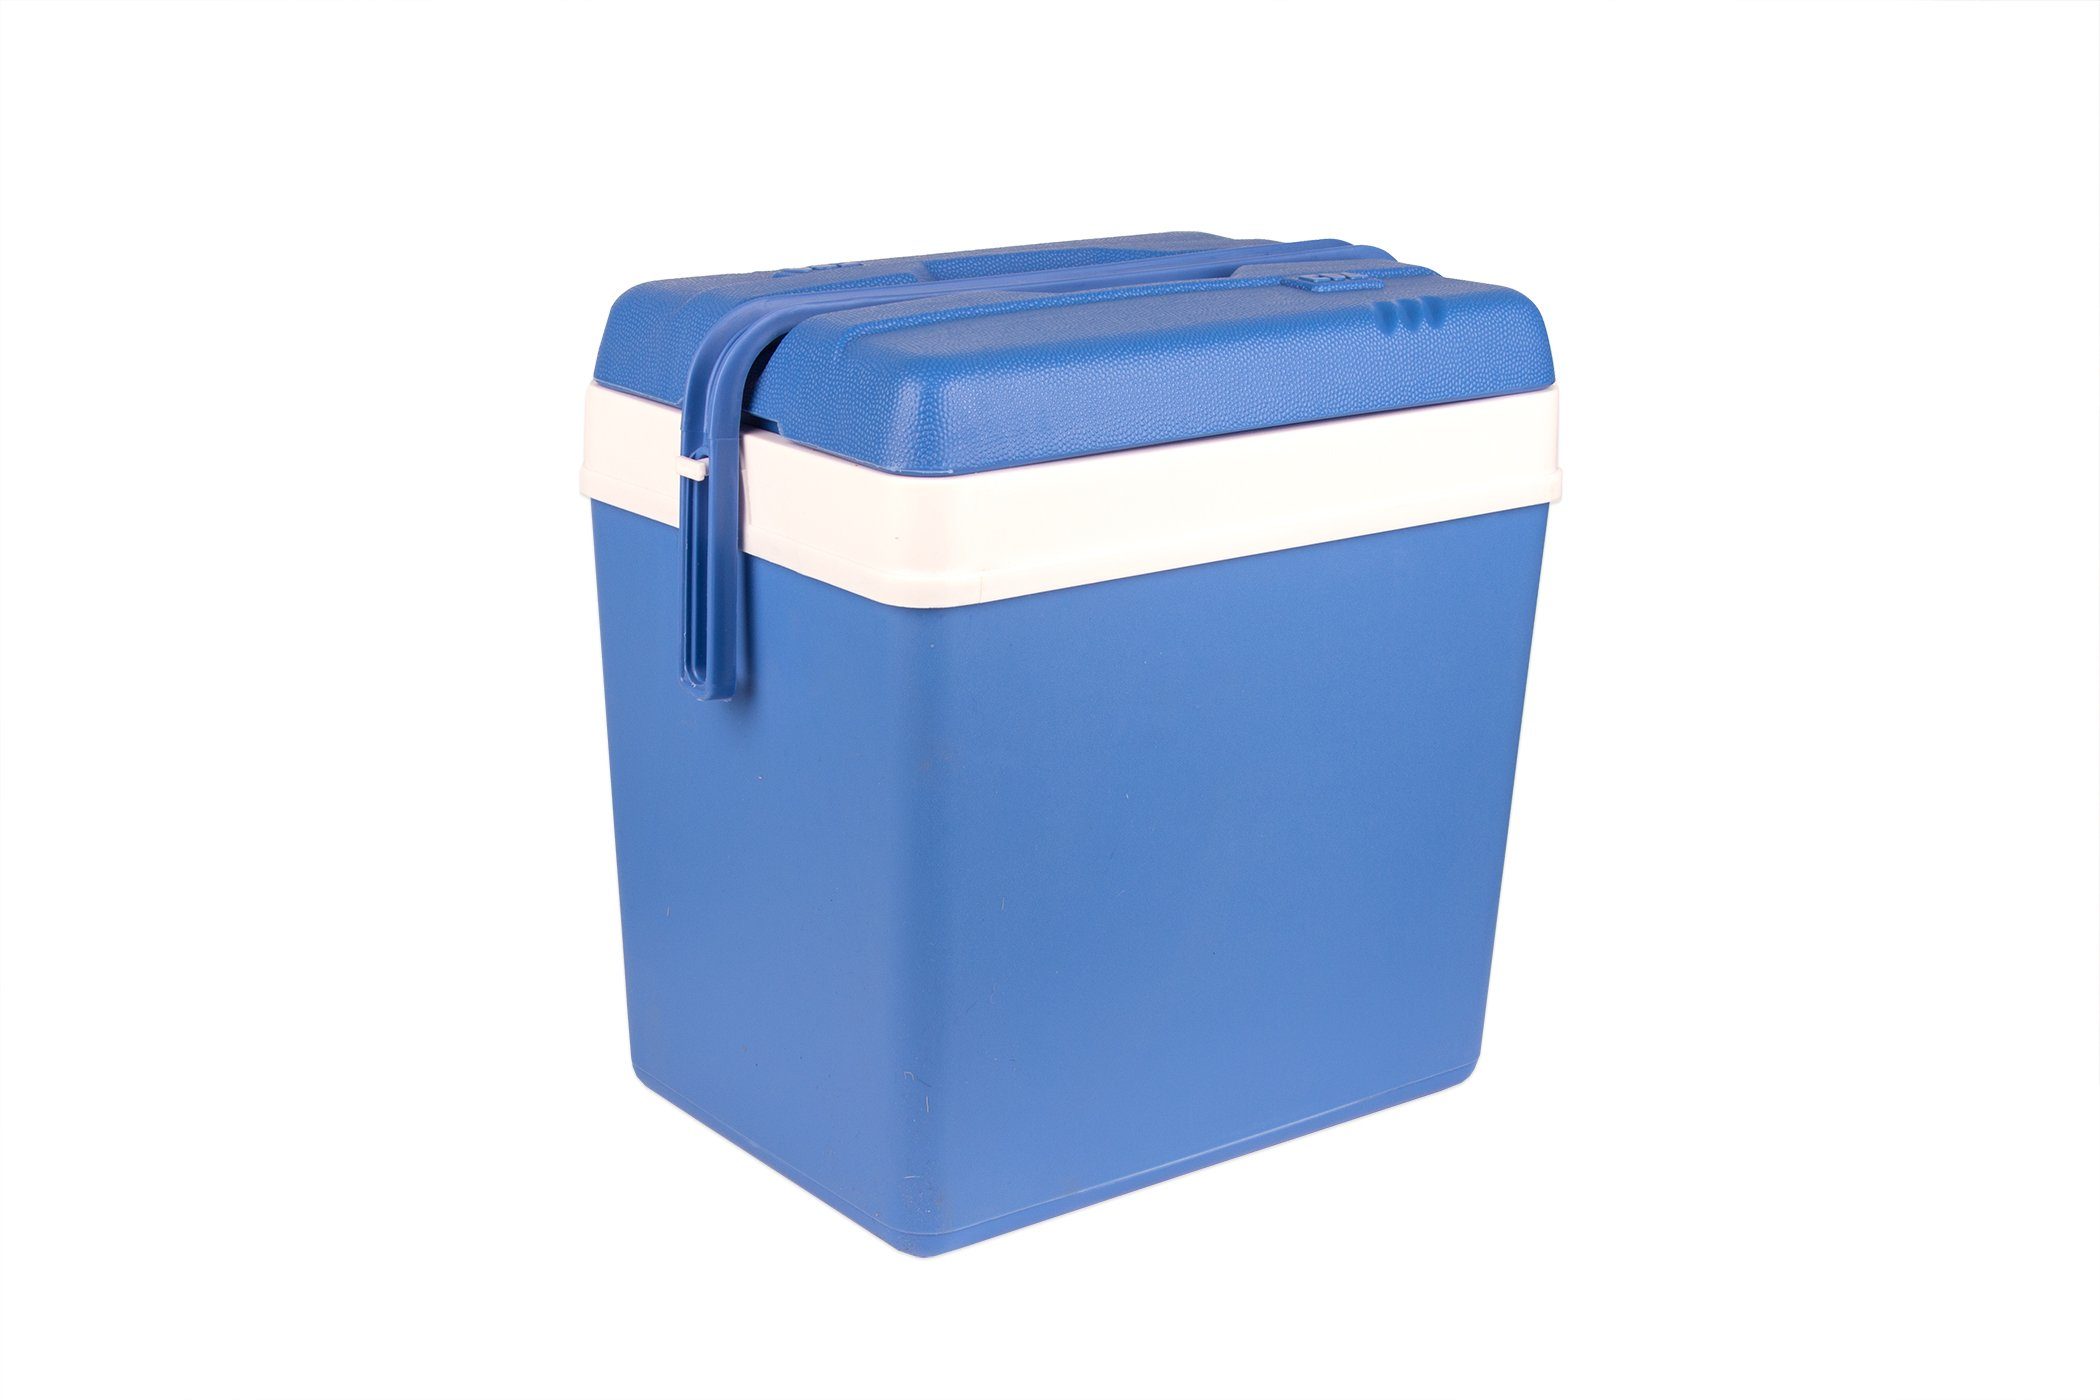 B-Ware:  Basics elektrische Kühlbox 21 Liter für 27,99